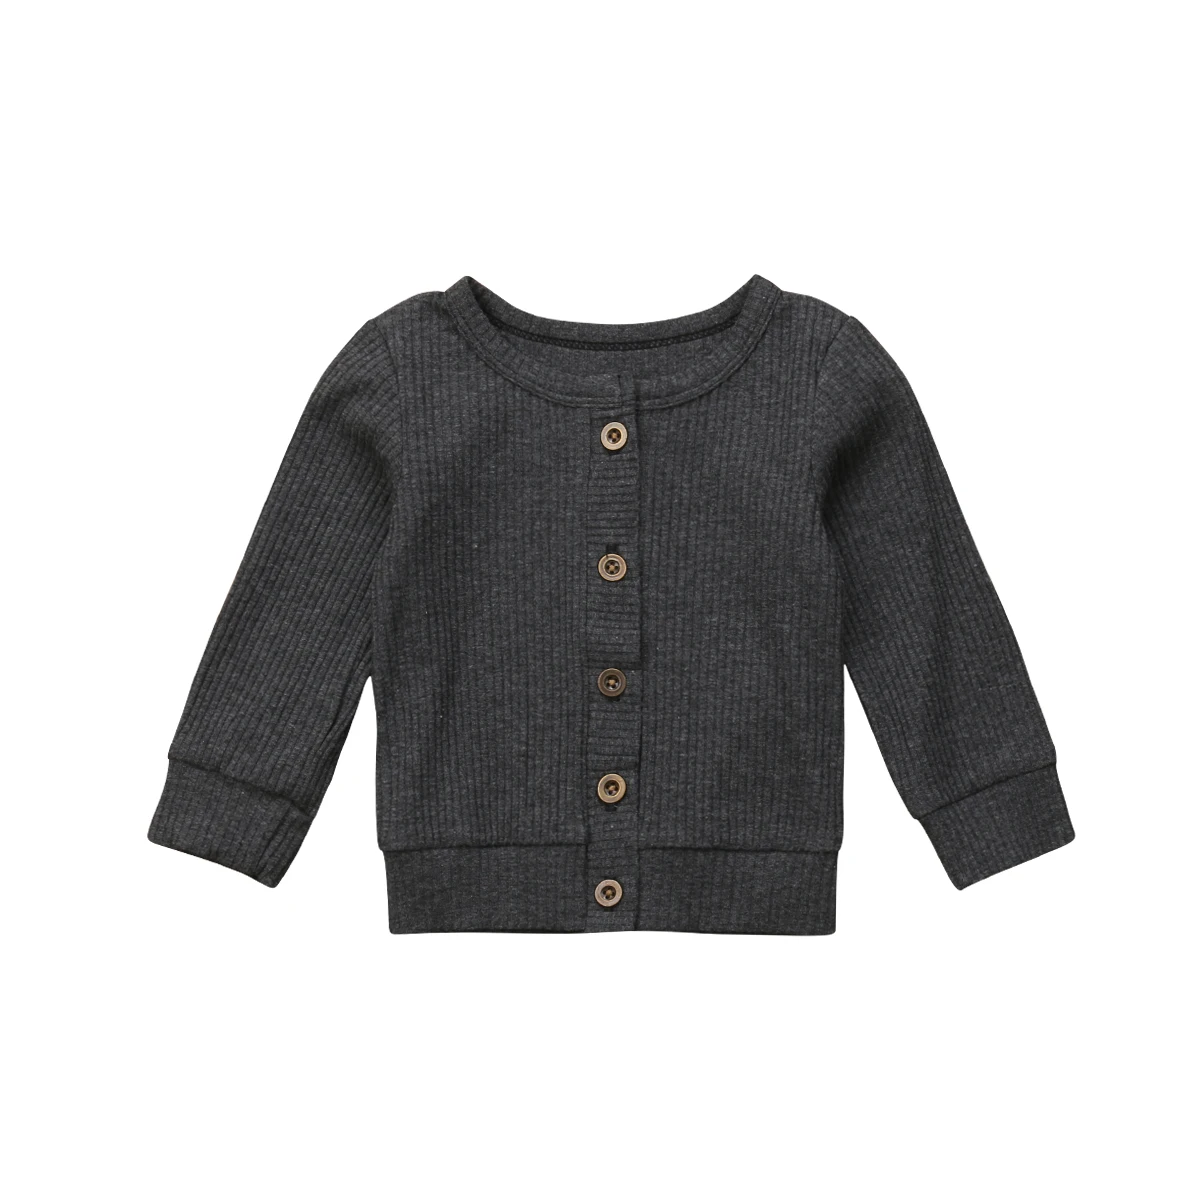 Г. Осенний вязаный свитер с длинными рукавами для новорожденных девочек кардиган, рубашки топы, верхняя одежда для малышей от 0 до 24 месяцев - Цвет: Серый